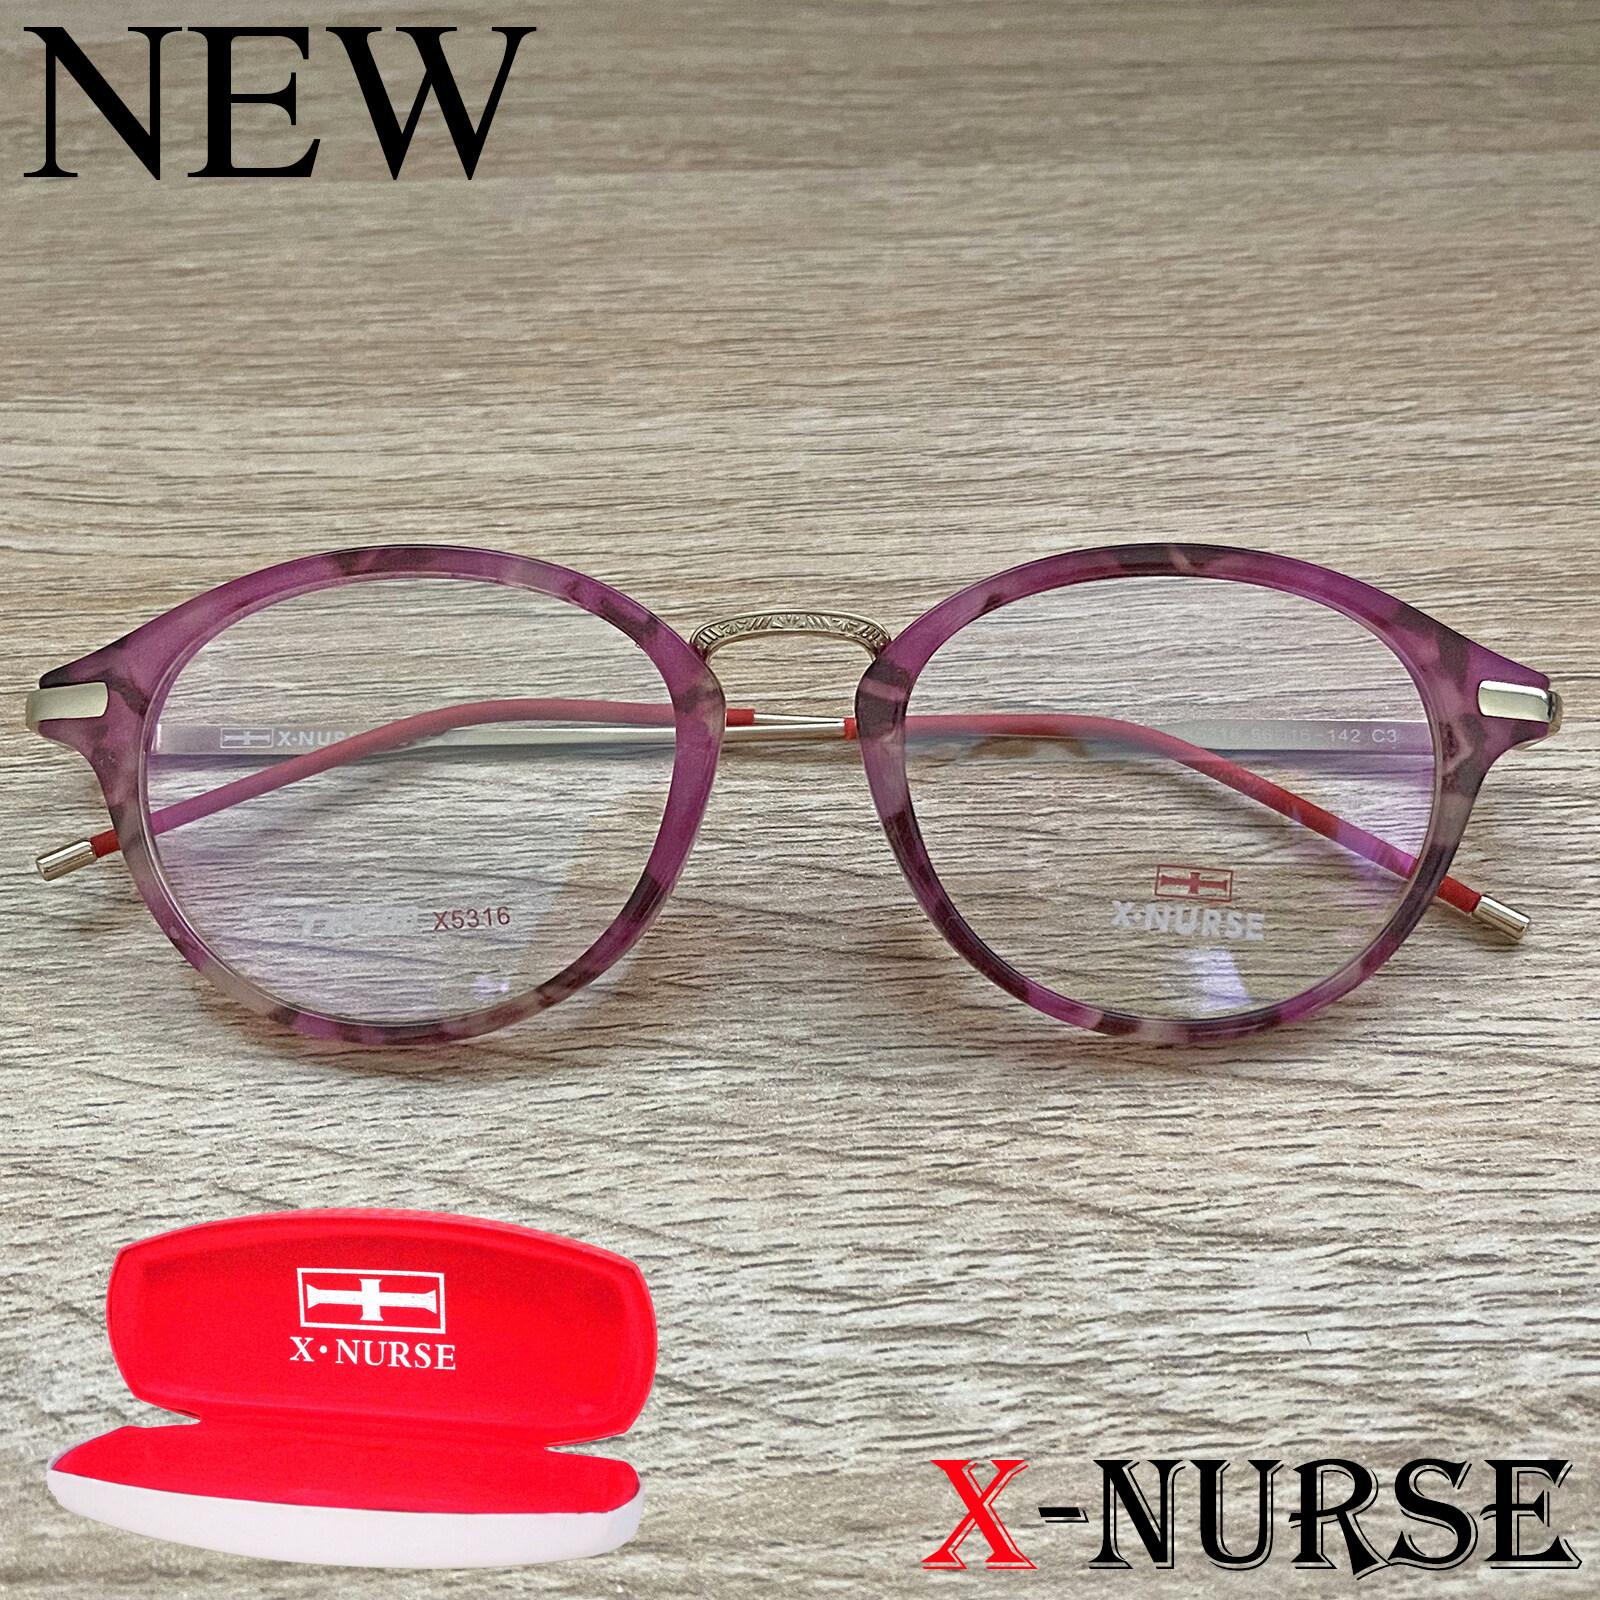 กรอบแว่นตา แว่นตาสำหรับตัดเลนส์ ผู้ชาย ผู้หญิง Fashion รุ่น X-NURSE 5316 สีชมพูกละ ทรงรี ขาข้อต่อ วัสดุ พลาสติก พีซี เกรด เอ รับตัดเลนส์สายตาเลนส์กันแดดทุกชนิด